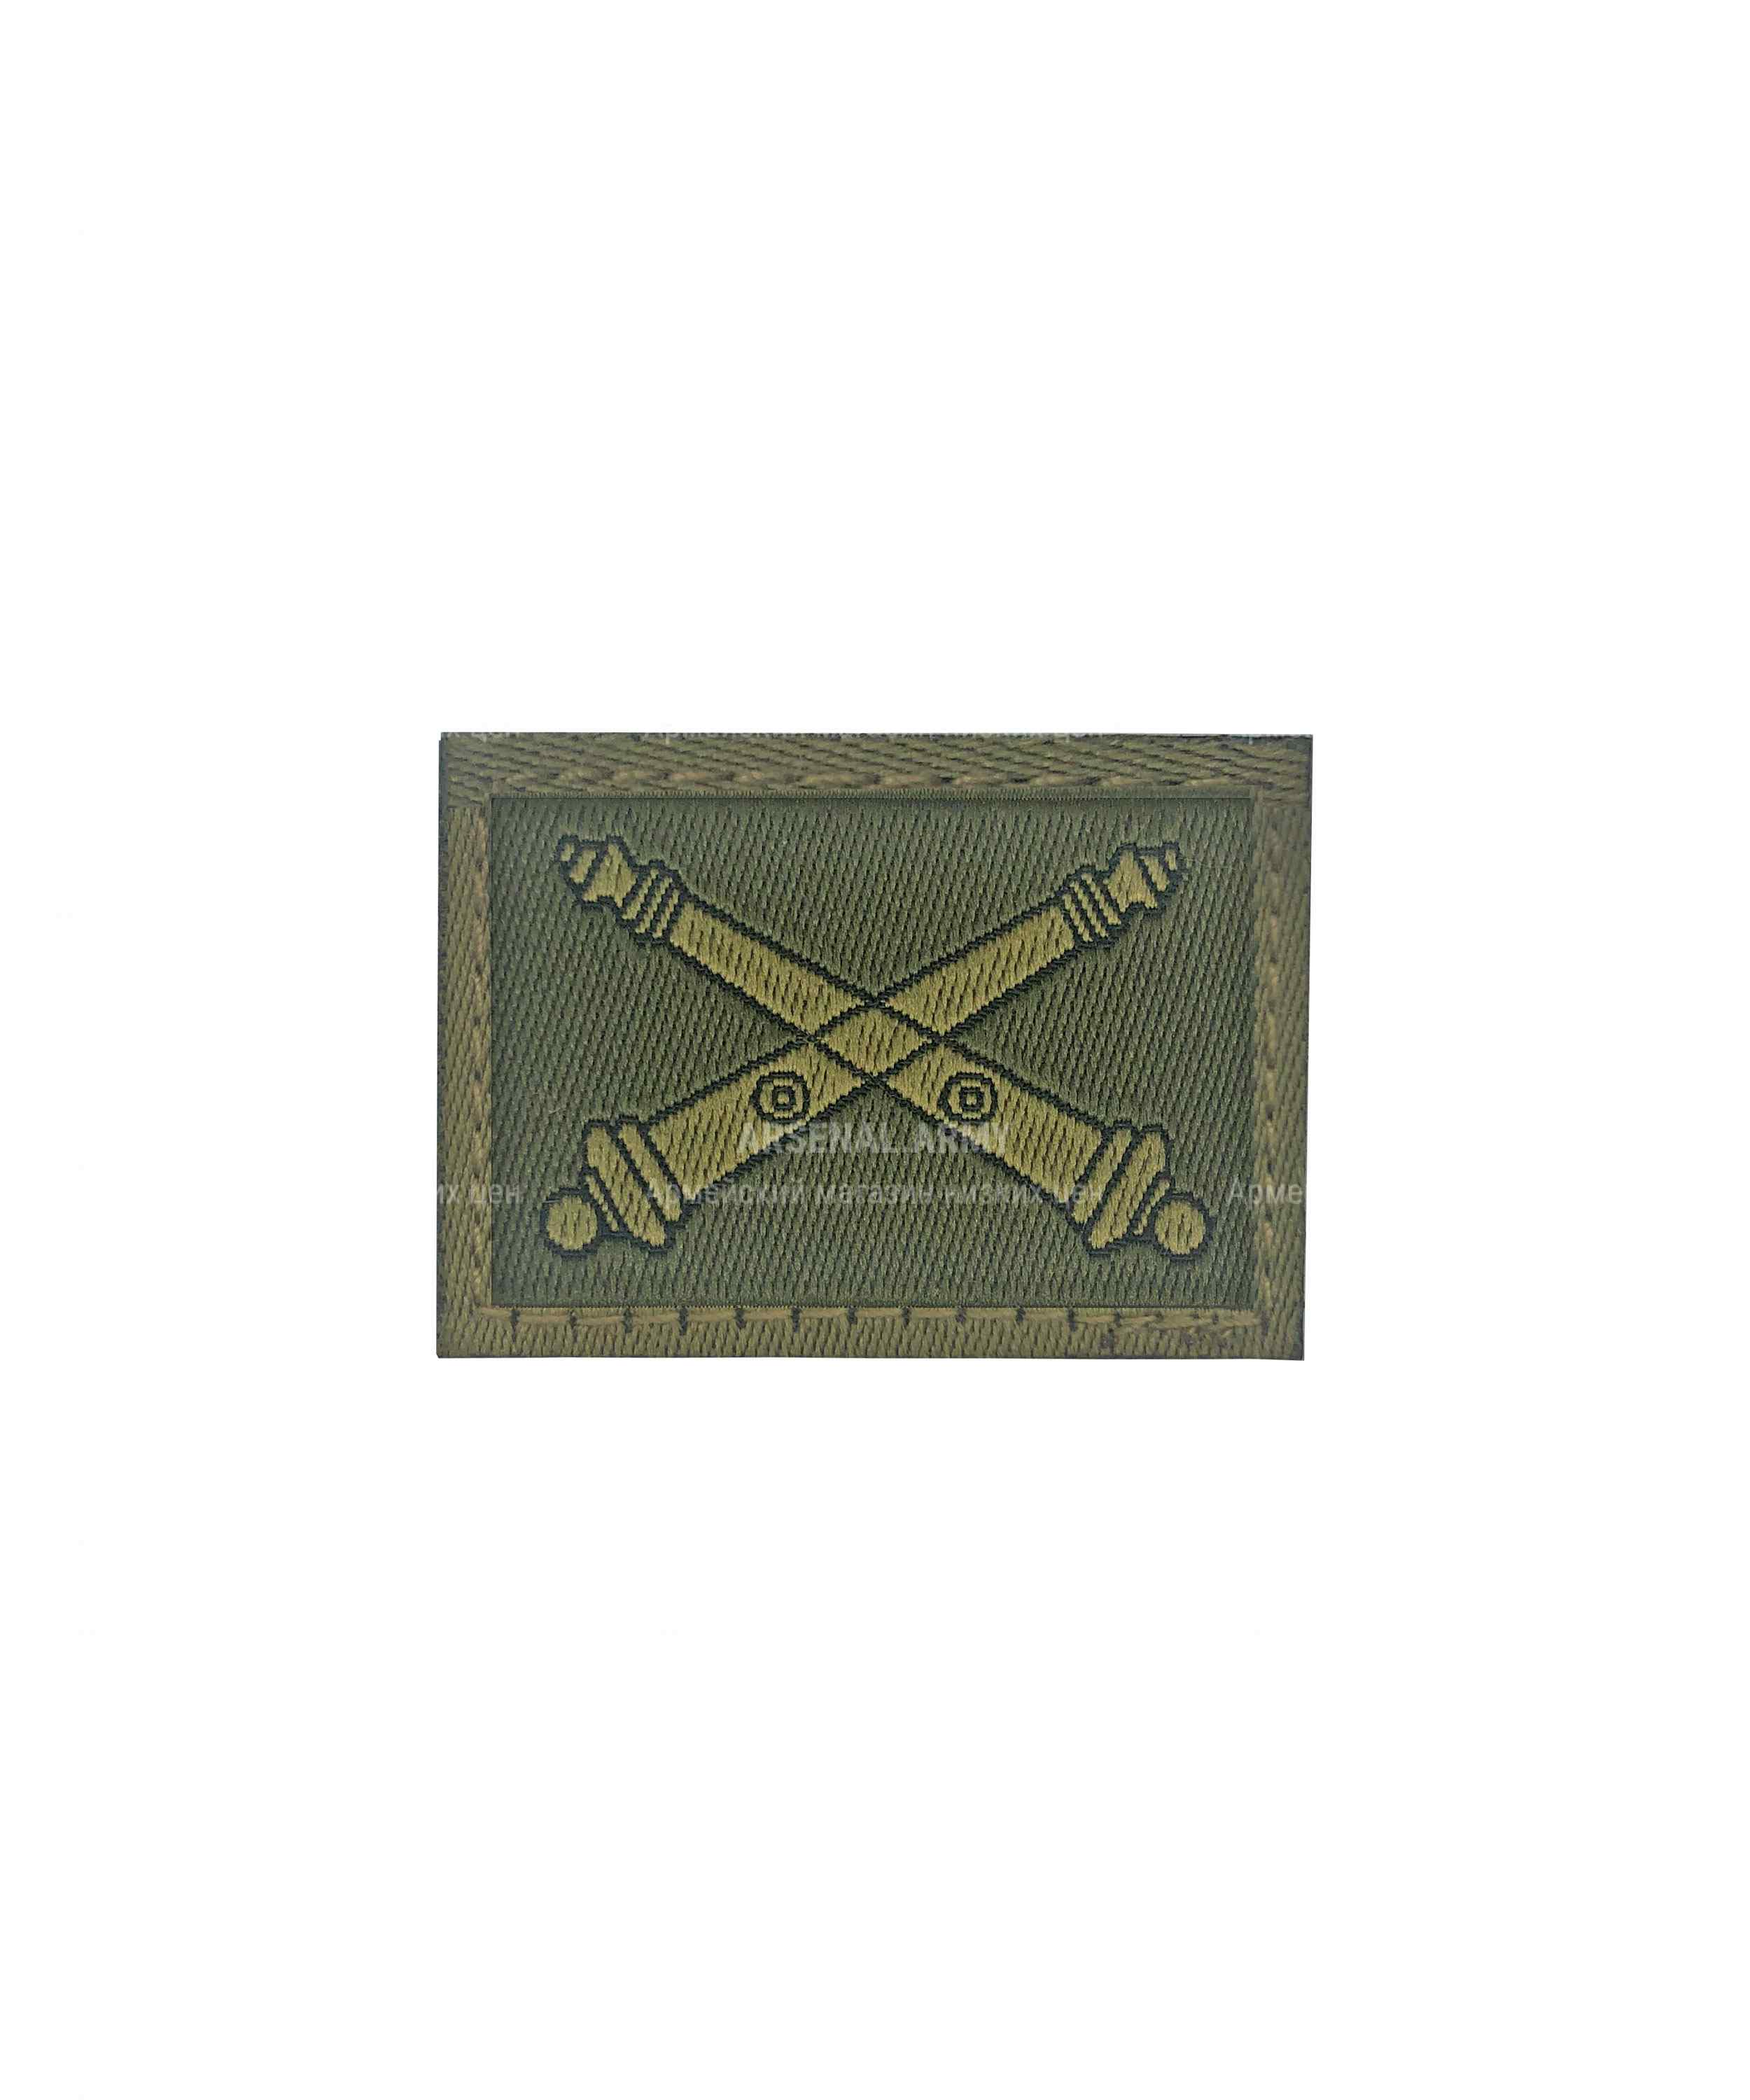 Эмблема артиллерия на липе зеленая — 1